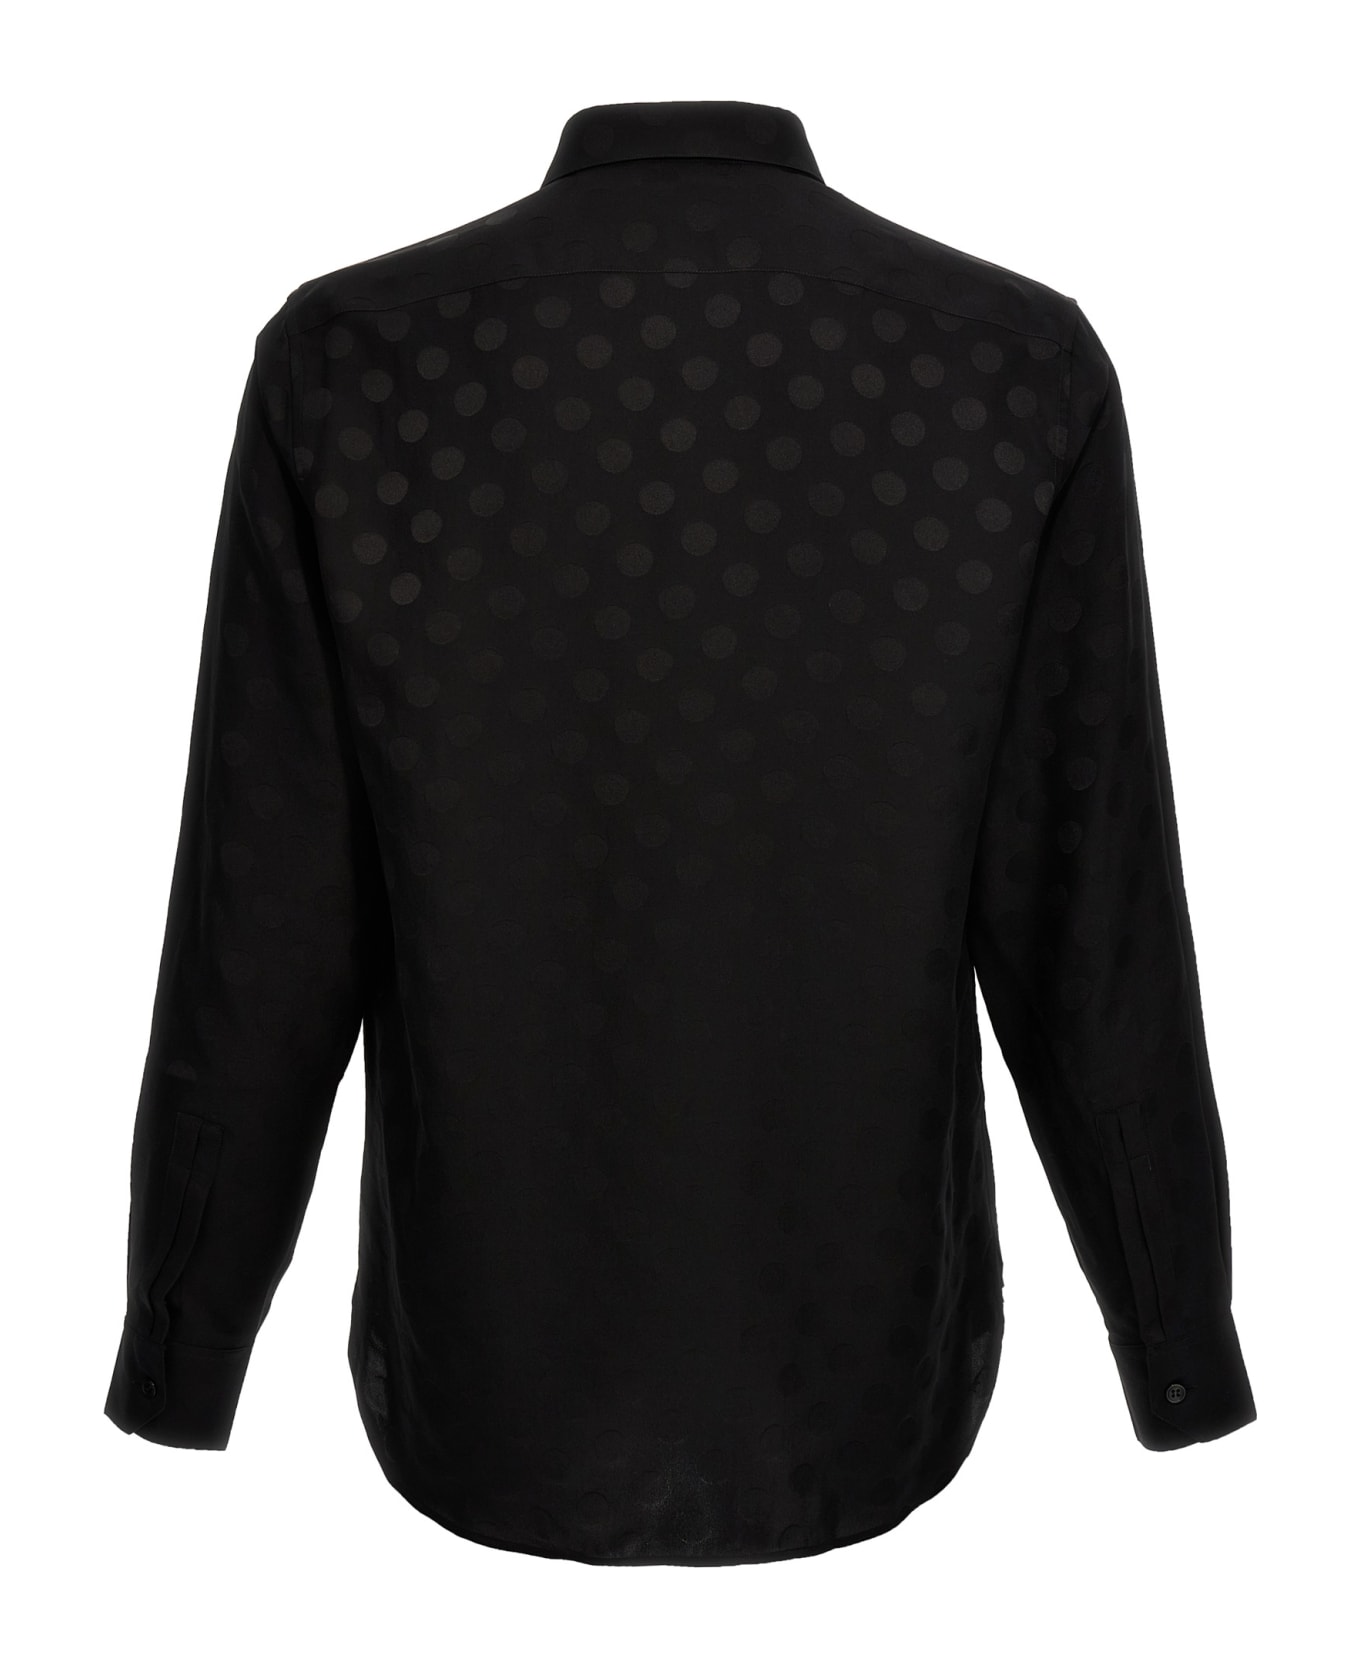 Saint Laurent Polka Dot Shirt - Black